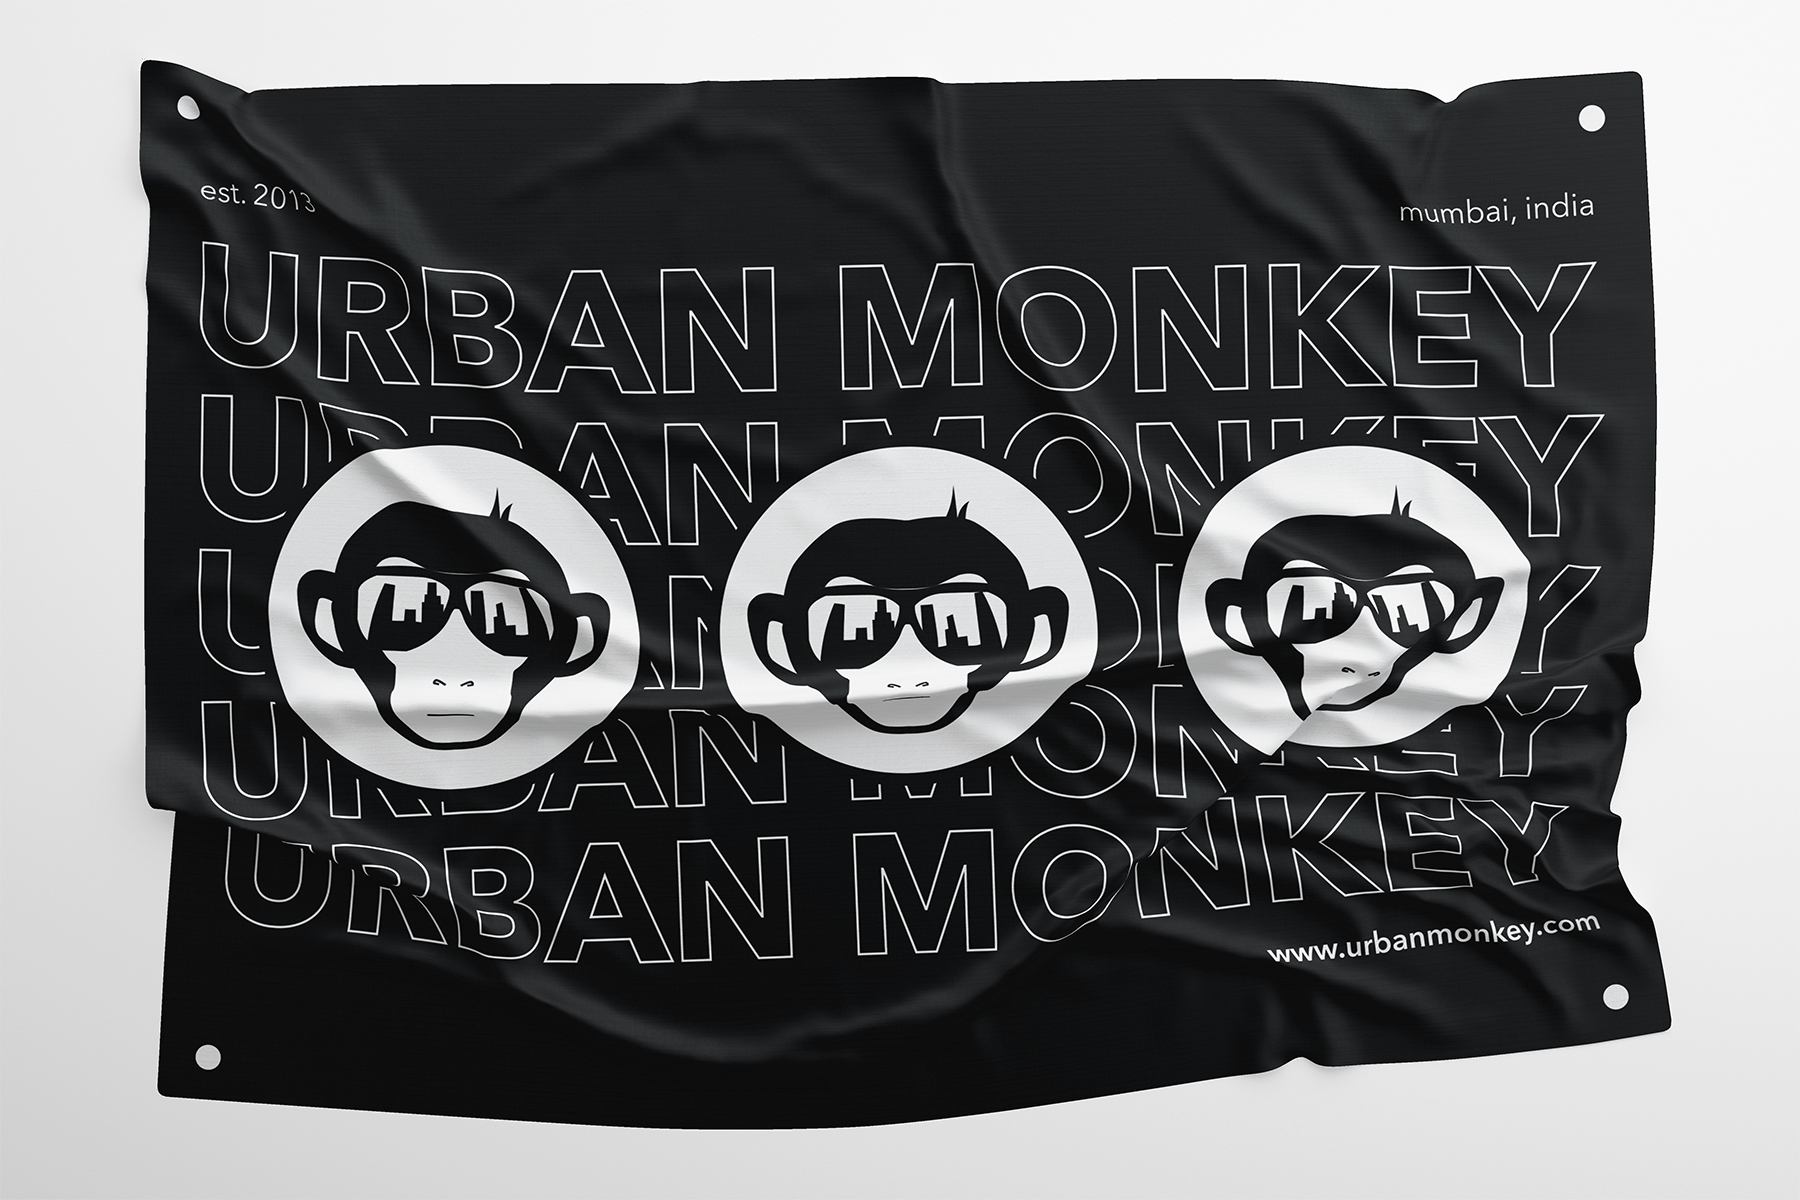 Urban Monkey India